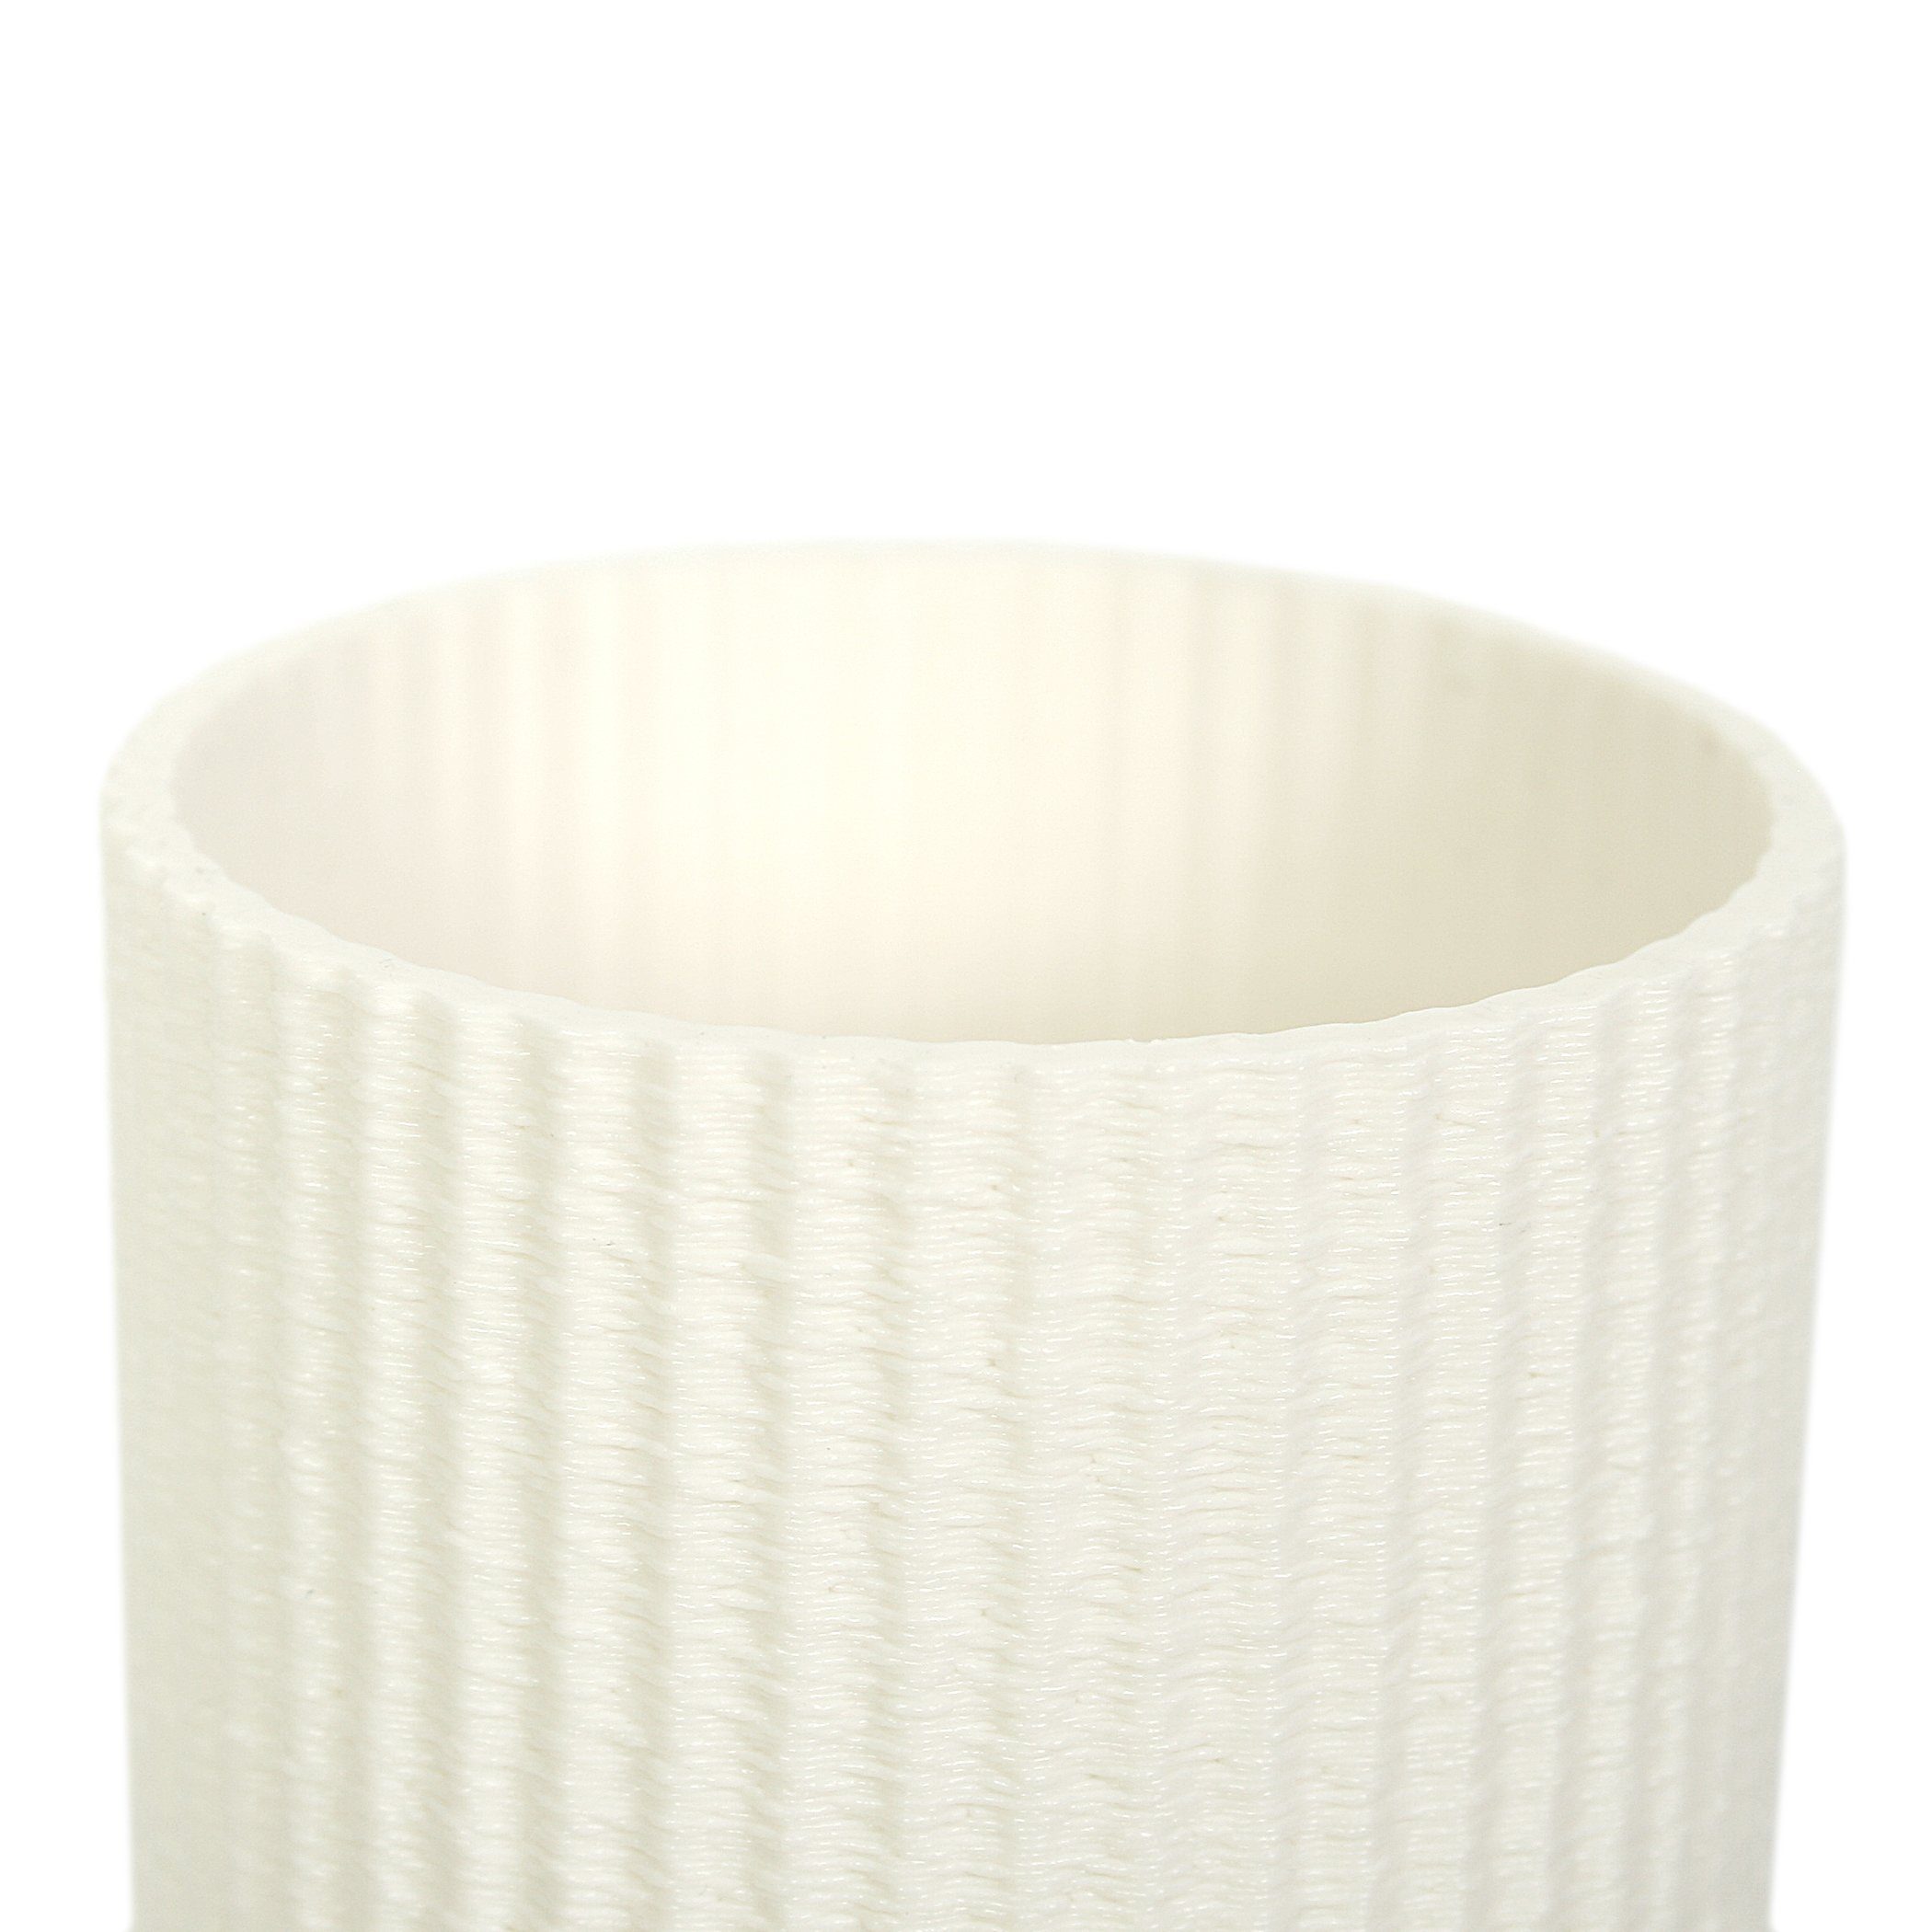 Kreative Designer aus – Bio-Kunststoff, Feder Rohstoffen; White nachwachsenden wasserdicht Dekorative Dekovase bruchsicher Vase & Blumenvase aus